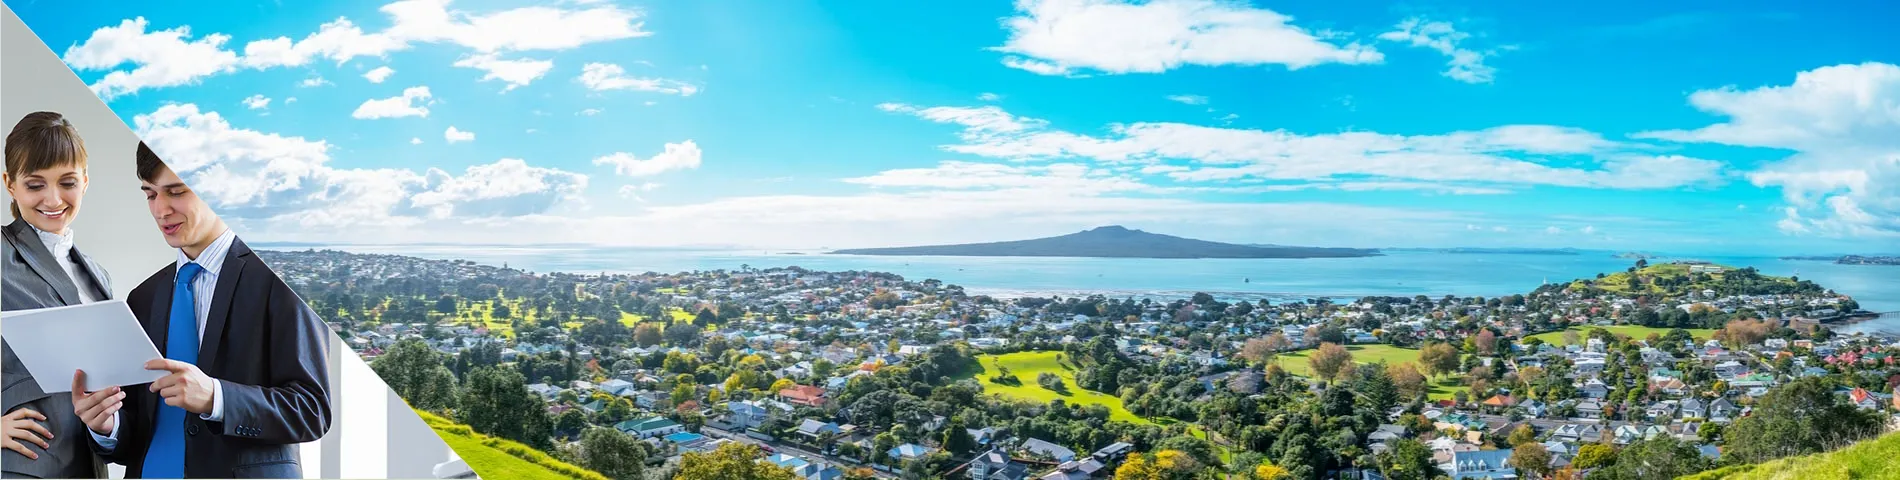 Auckland - Business één-op-één